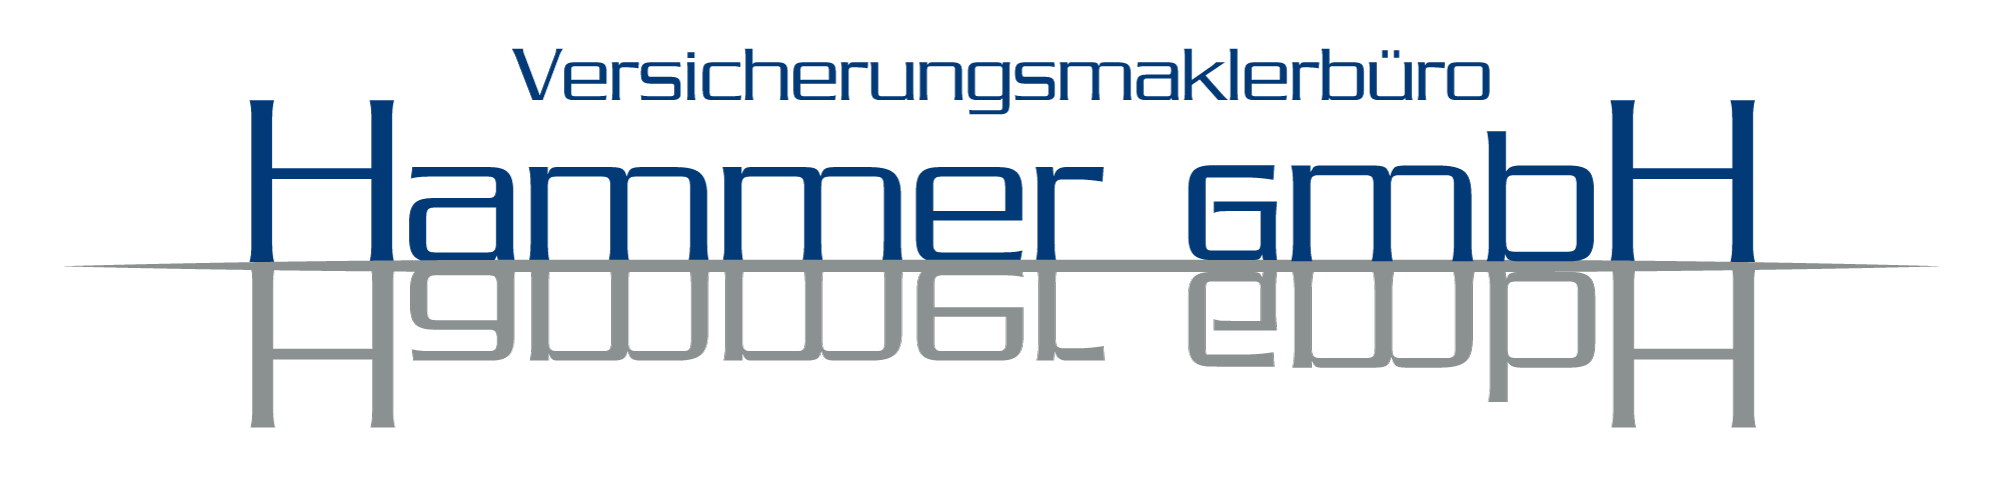 Versicherungsmaklerbüro HAMMER Logo